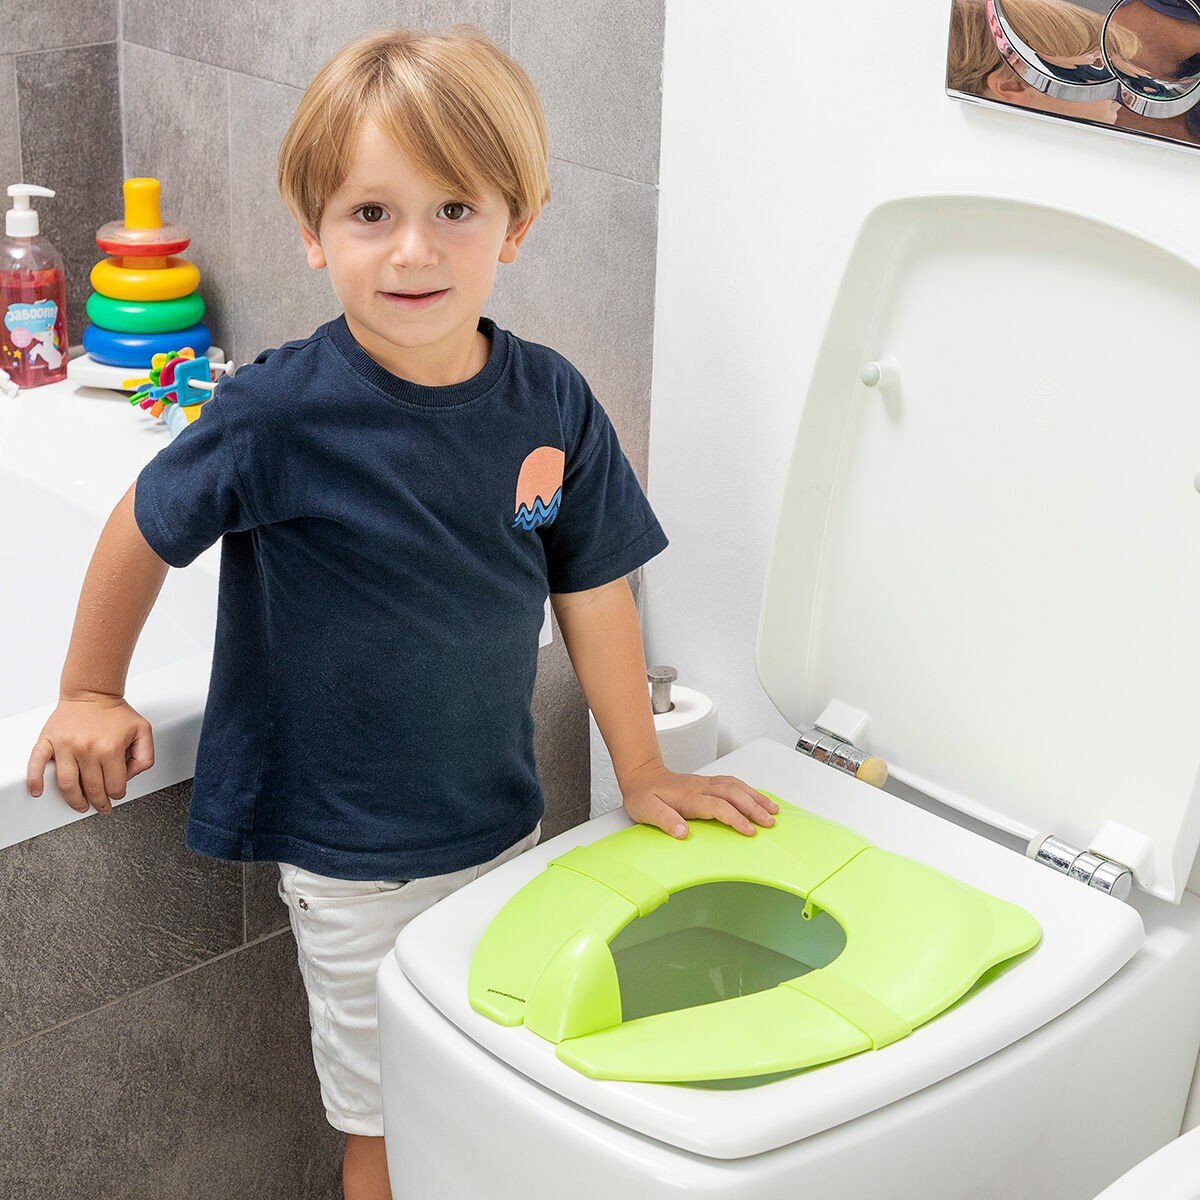 Siège de toilettes pour enfants KIDIZ® Réducteur de toilettes avec